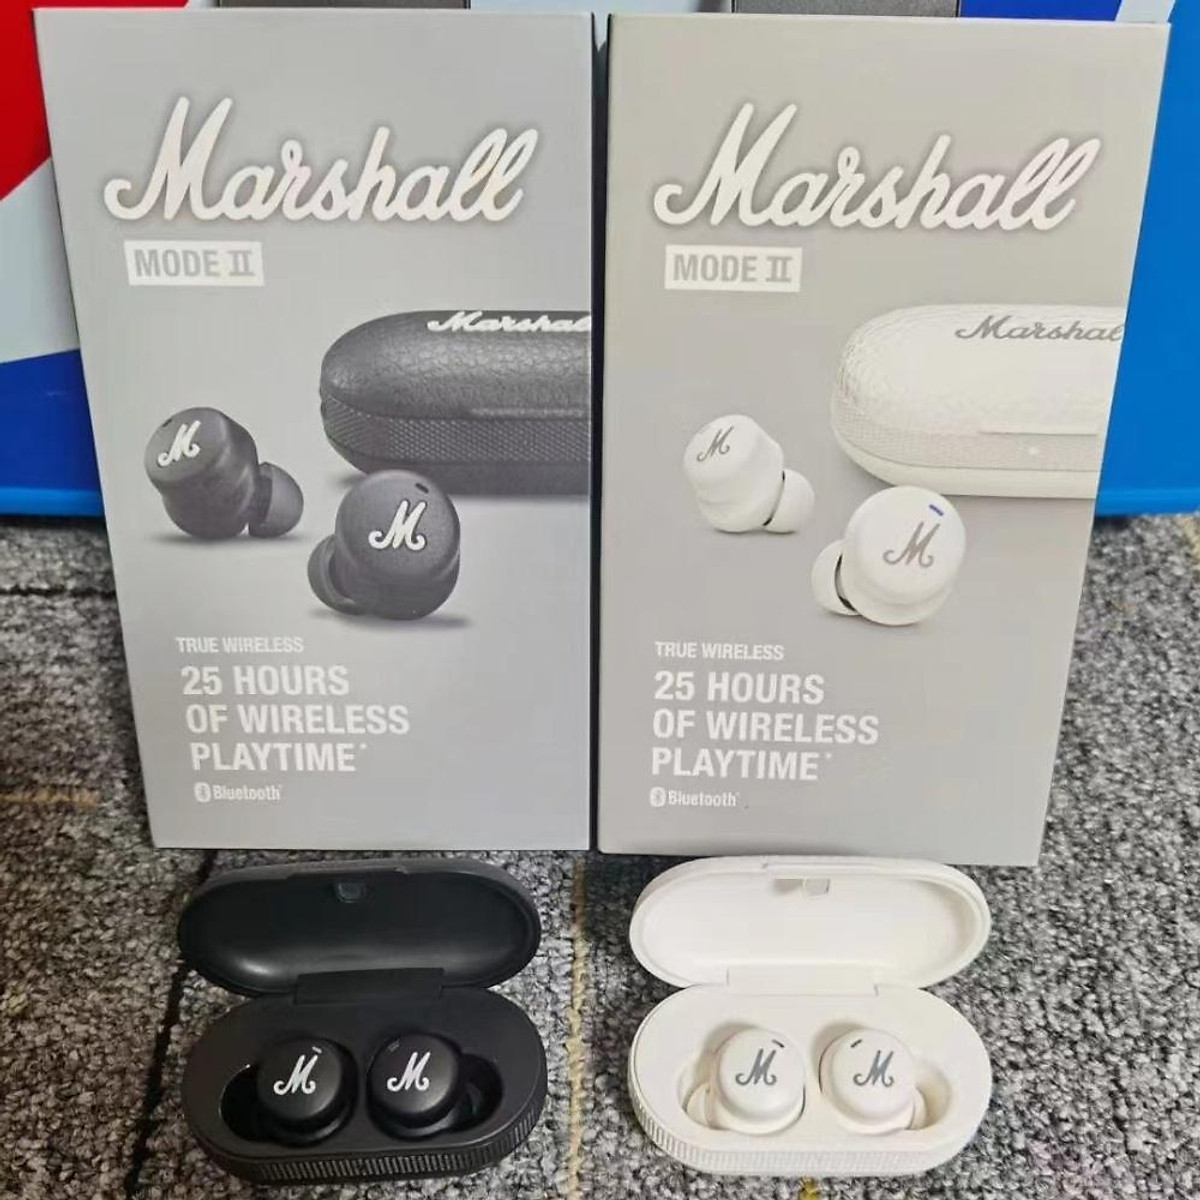 Sự xuất hiện của tai nghe không dây Marshall Mode II Bluetooth Wireless TWS đã trở thành cơn sốt trong giới nghe nhạc. Với chất lượng âm thanh tuyệt vời và tính năng thông minh, sản phẩm sẵn hàng tại cửa hàng của chúng tôi. Hãy trải nghiệm sự tiện lợi và chất lượng của tai nghe Marshall ngay hôm nay!